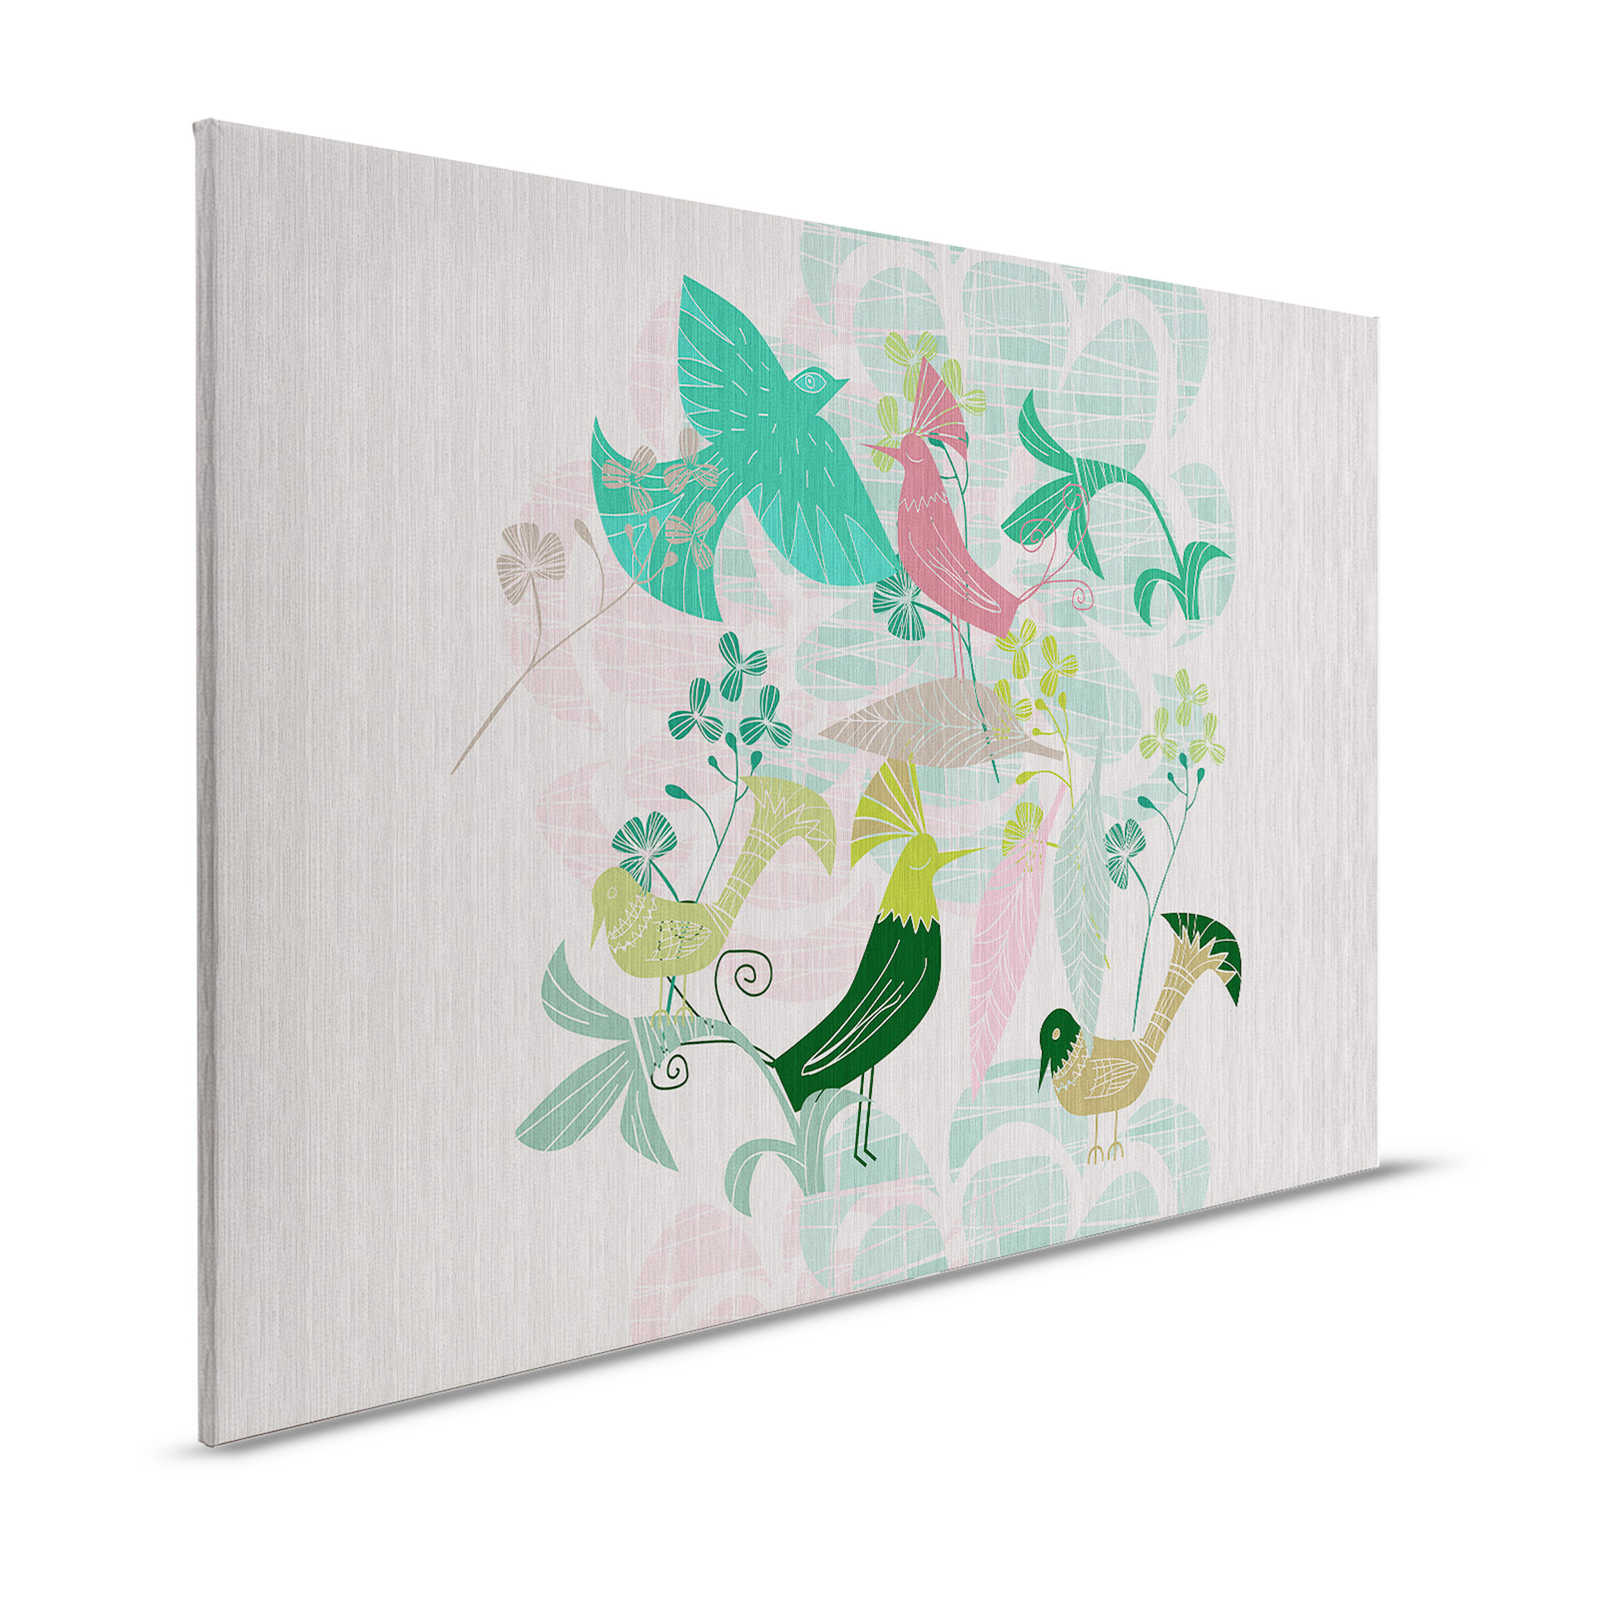 Birdland 3 - Pintura en lienzo Pájaros verdes y rosas Patrón estilo retro - 1,20 m x 0,80 m
